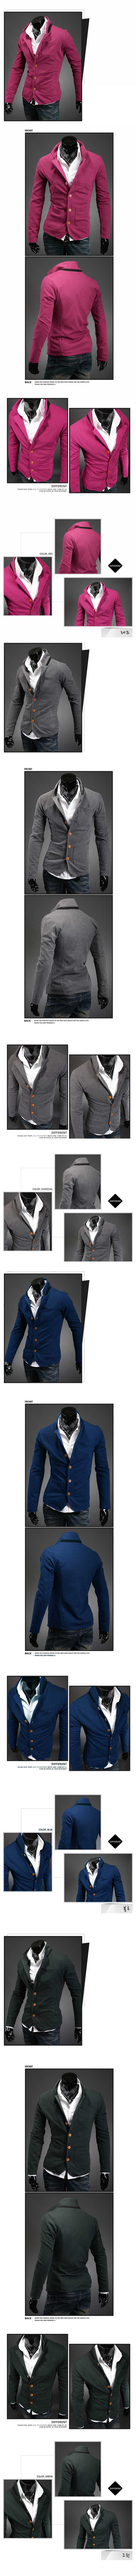 jual jaket pria korea terbaru , terbuat dari bahan katun yang nyaman dipakai, temukan koleksi jaket pria korea terbaru lain nya hanya di store.pakaianfashionpria.com